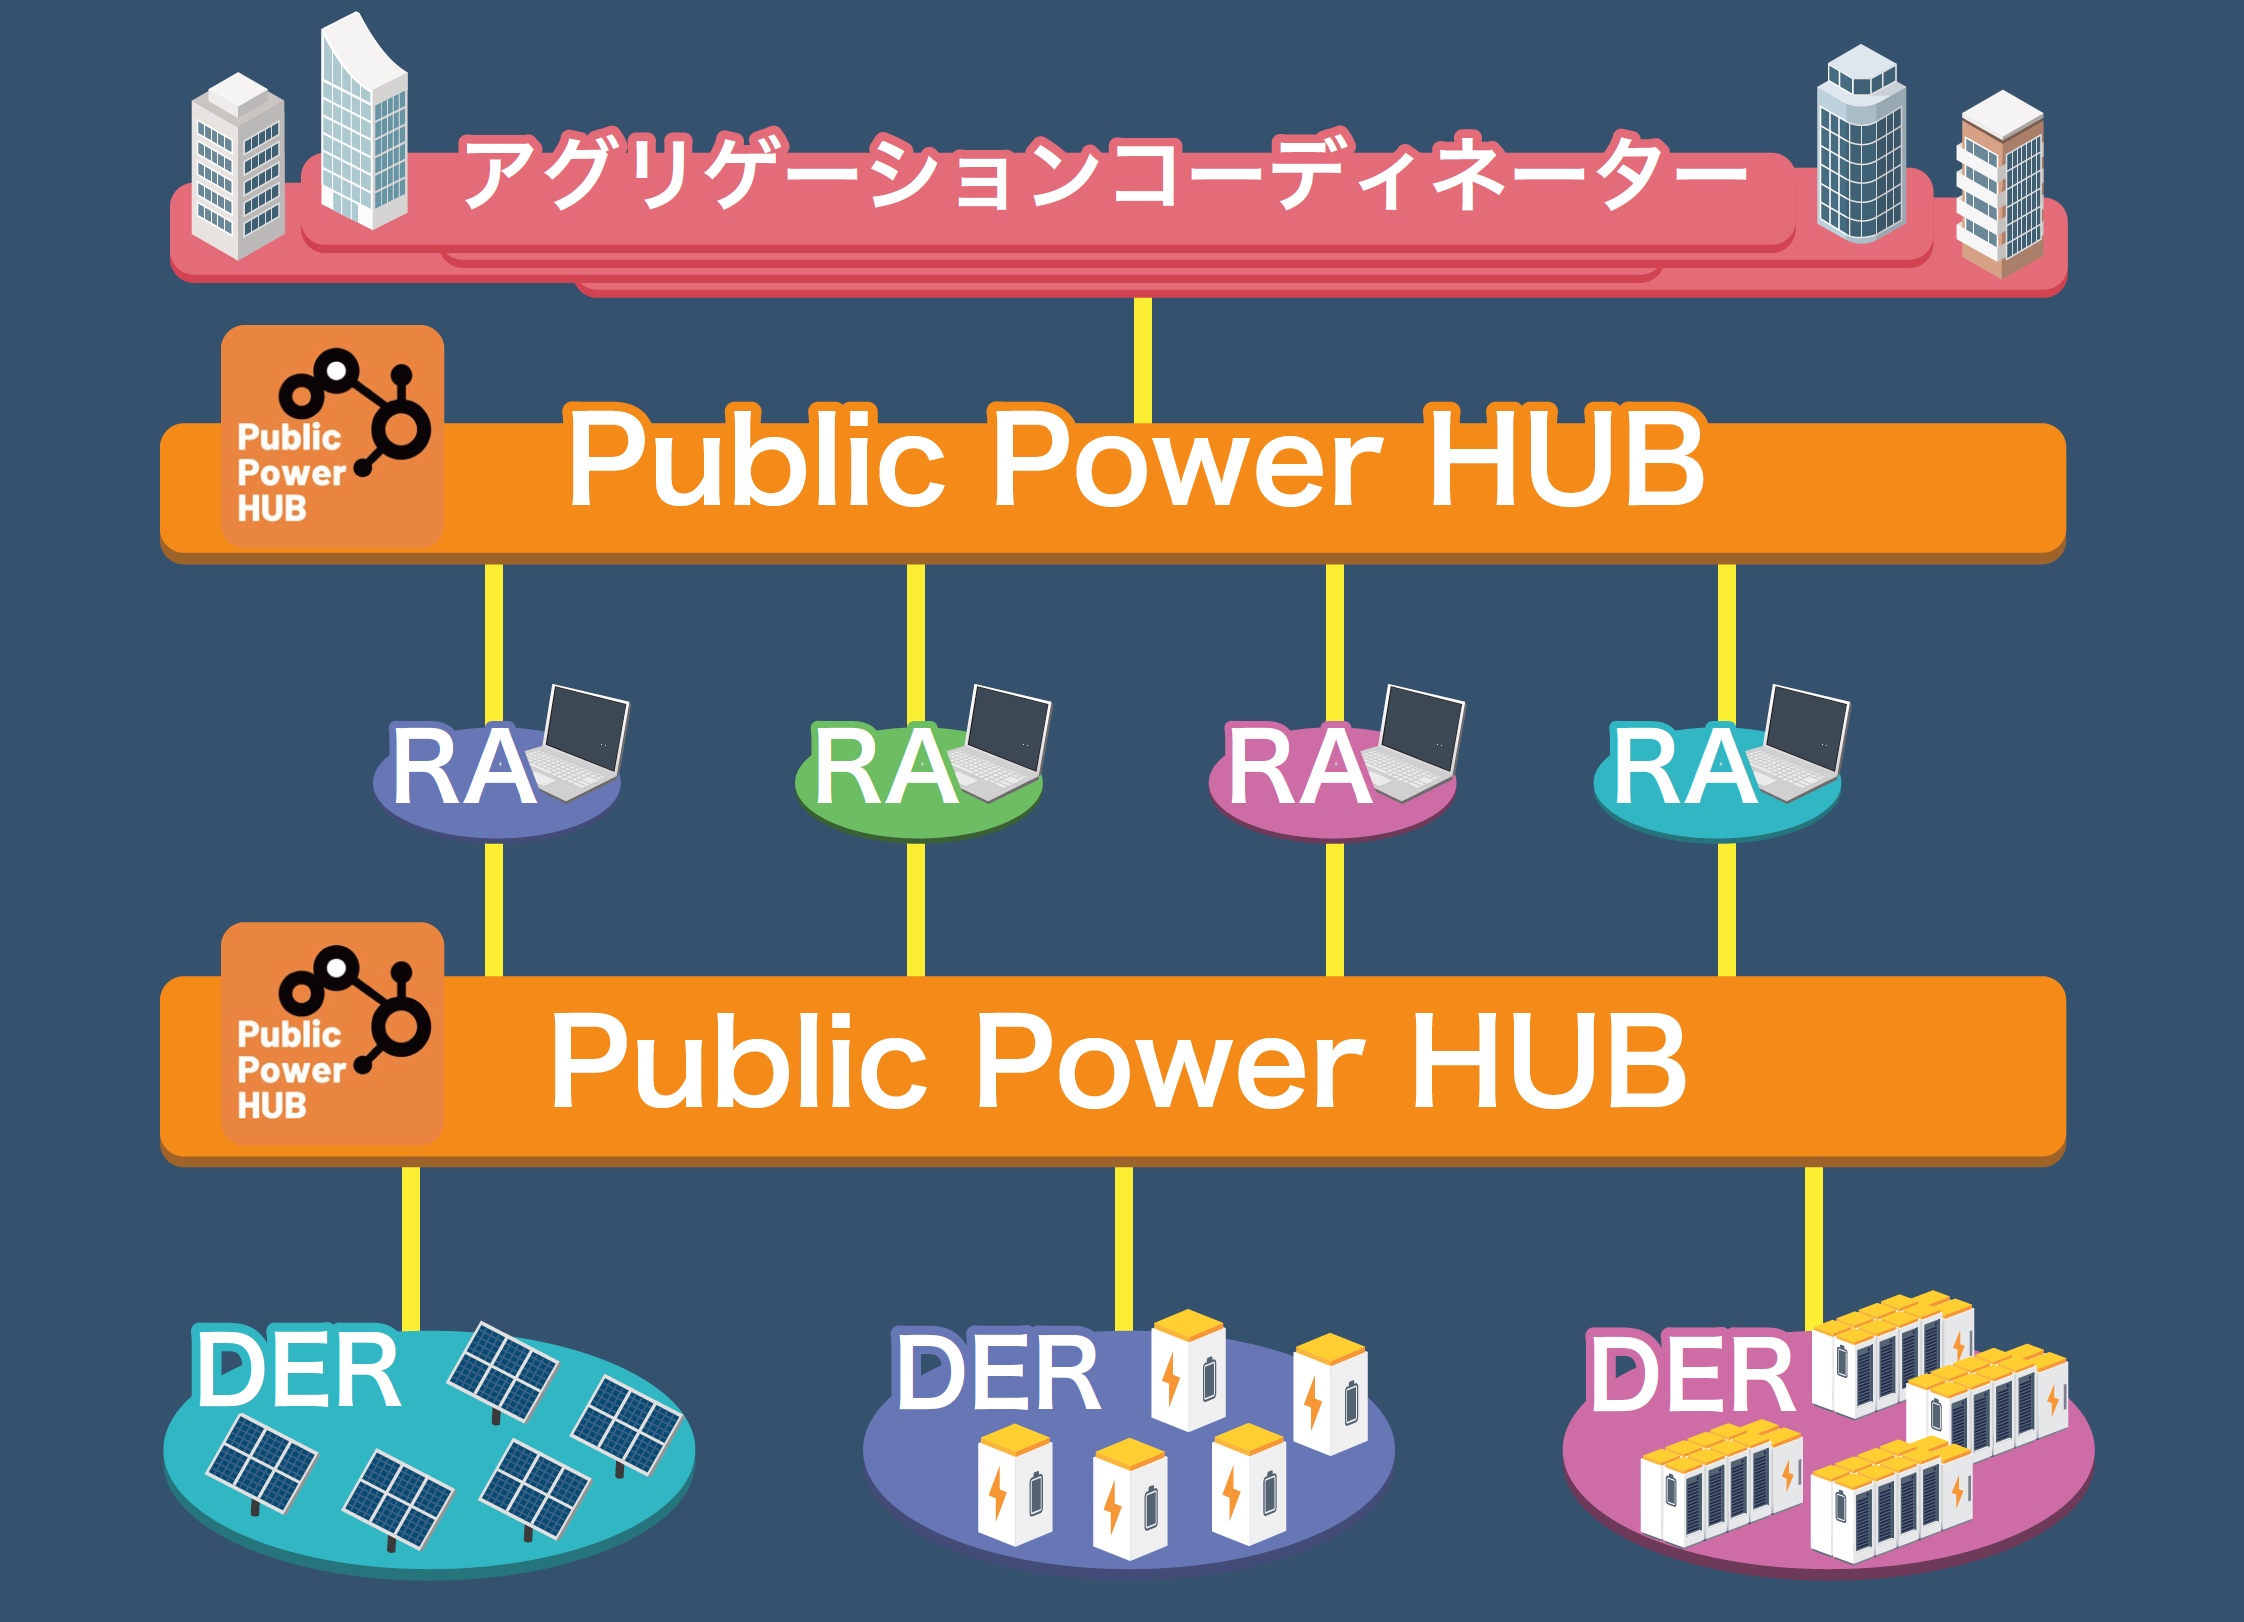 分散エネルギー資源の相互接続インフラ Public Power Hub 構想の検討開始について Iot Exのプレスリリース